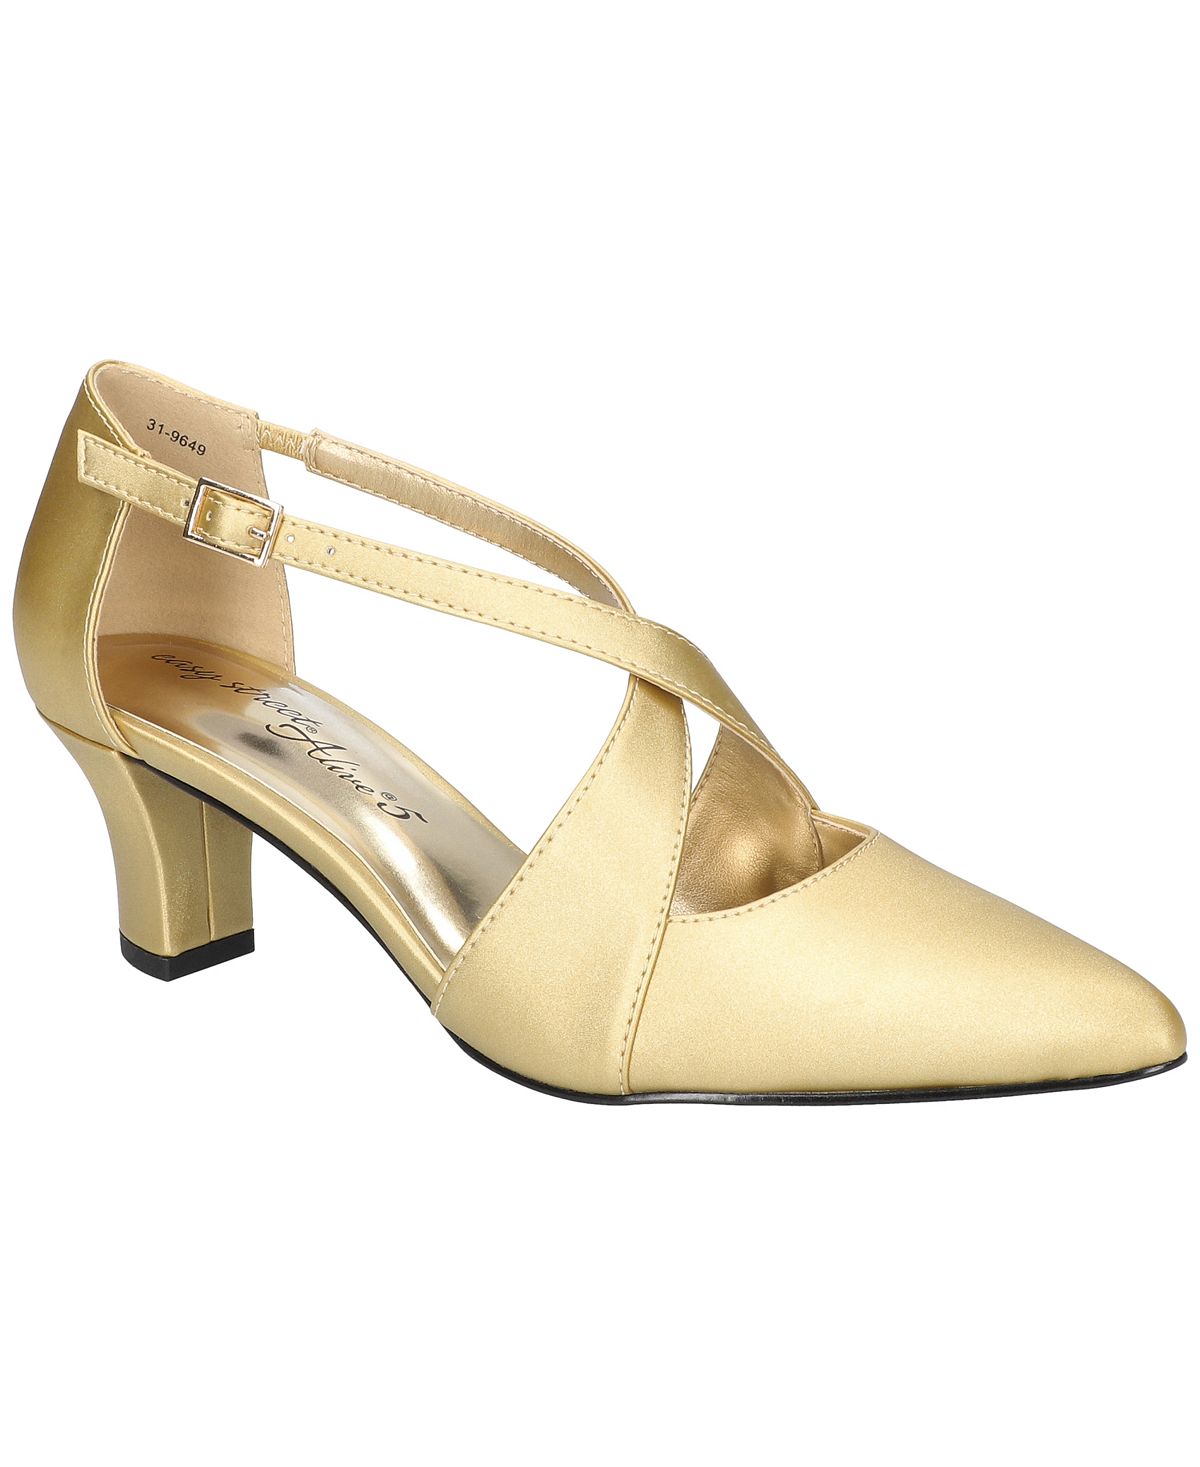 Женские туфли-лодочки Elegance с перекрестными ремешками спереди Easy Street, золотой